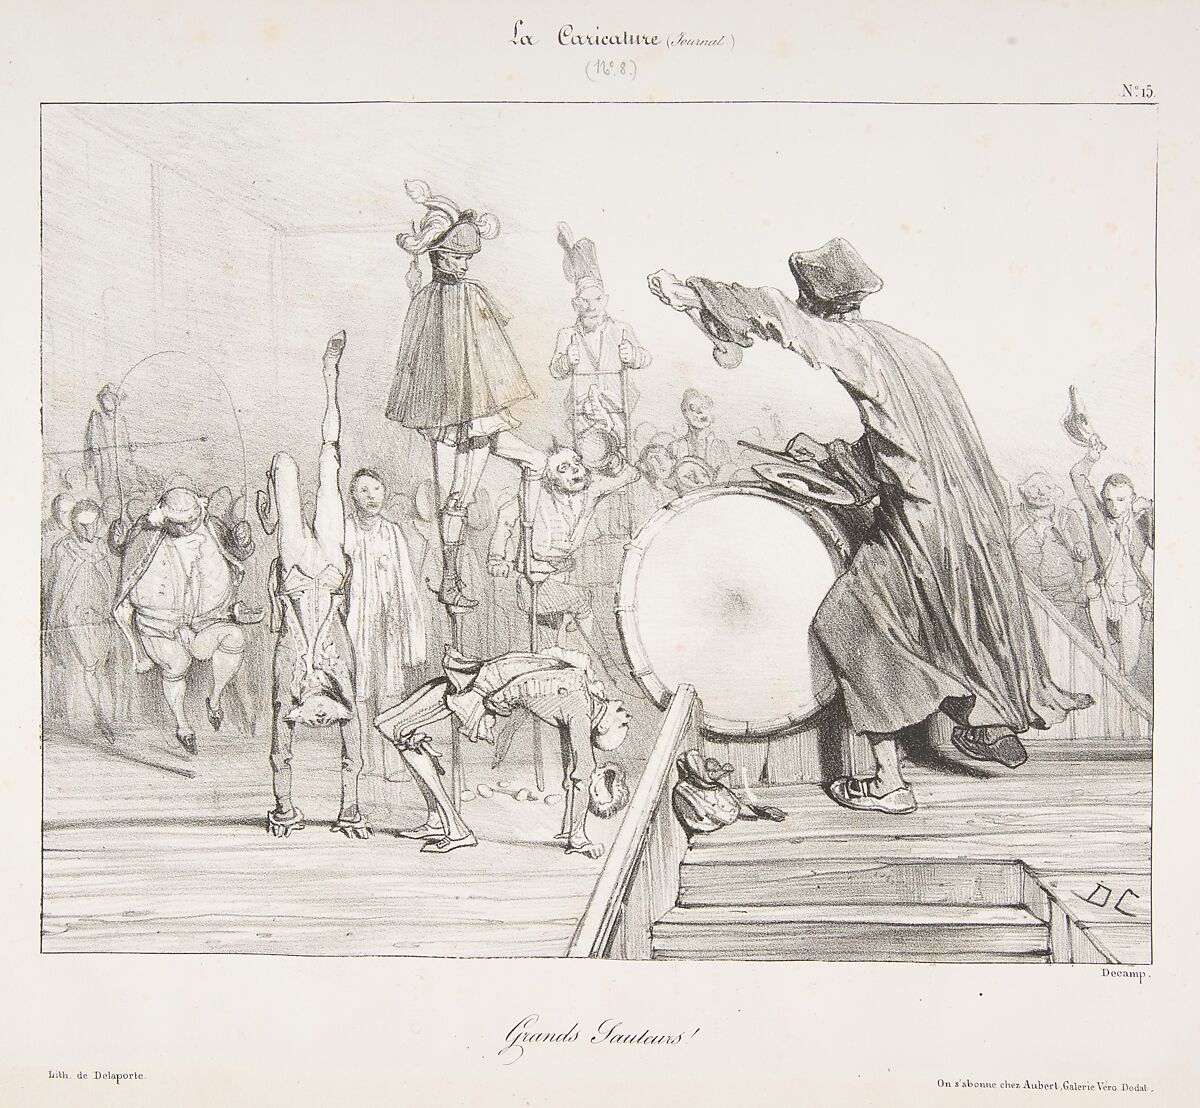 Grands Sauteurs!, from "La Caricature", Alexandre-Gabriel Decamps (French, Paris 1803–1860 Fontainebleau), Lithograph 